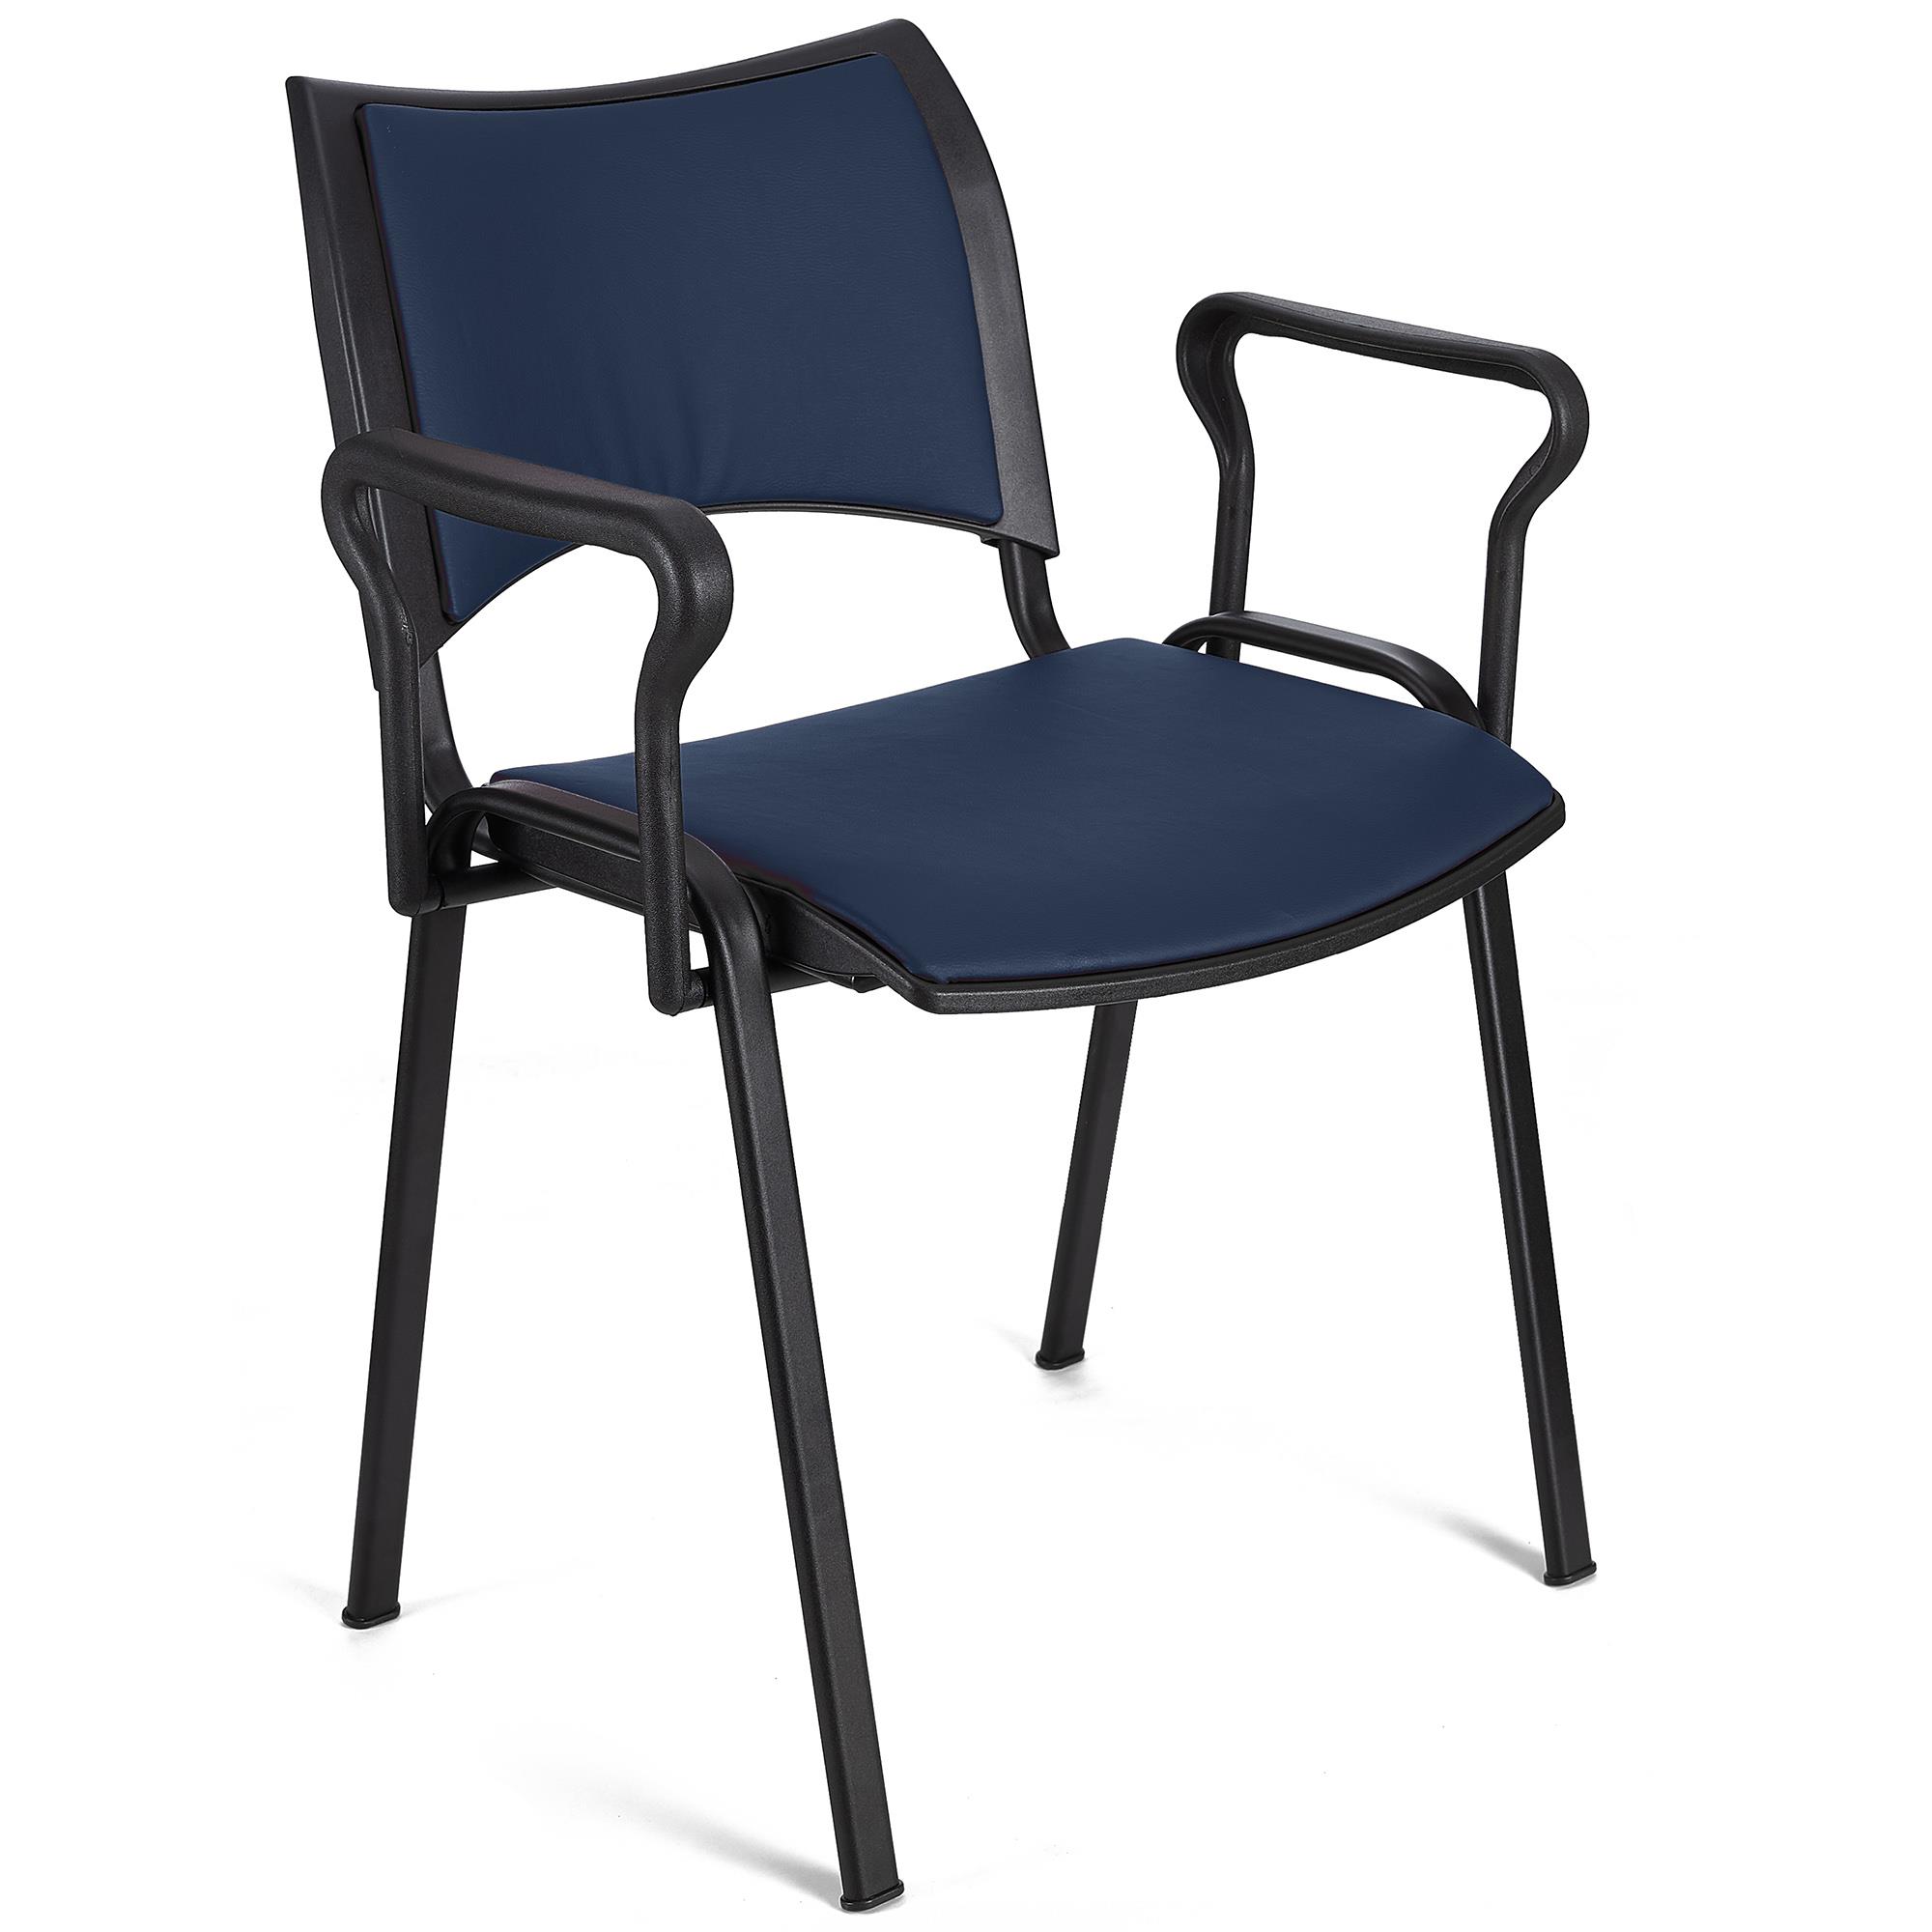 Cadeira de Visita ROMEL PELE COM BRAÇOS, Empilhável, Pernas Pretas, Azul